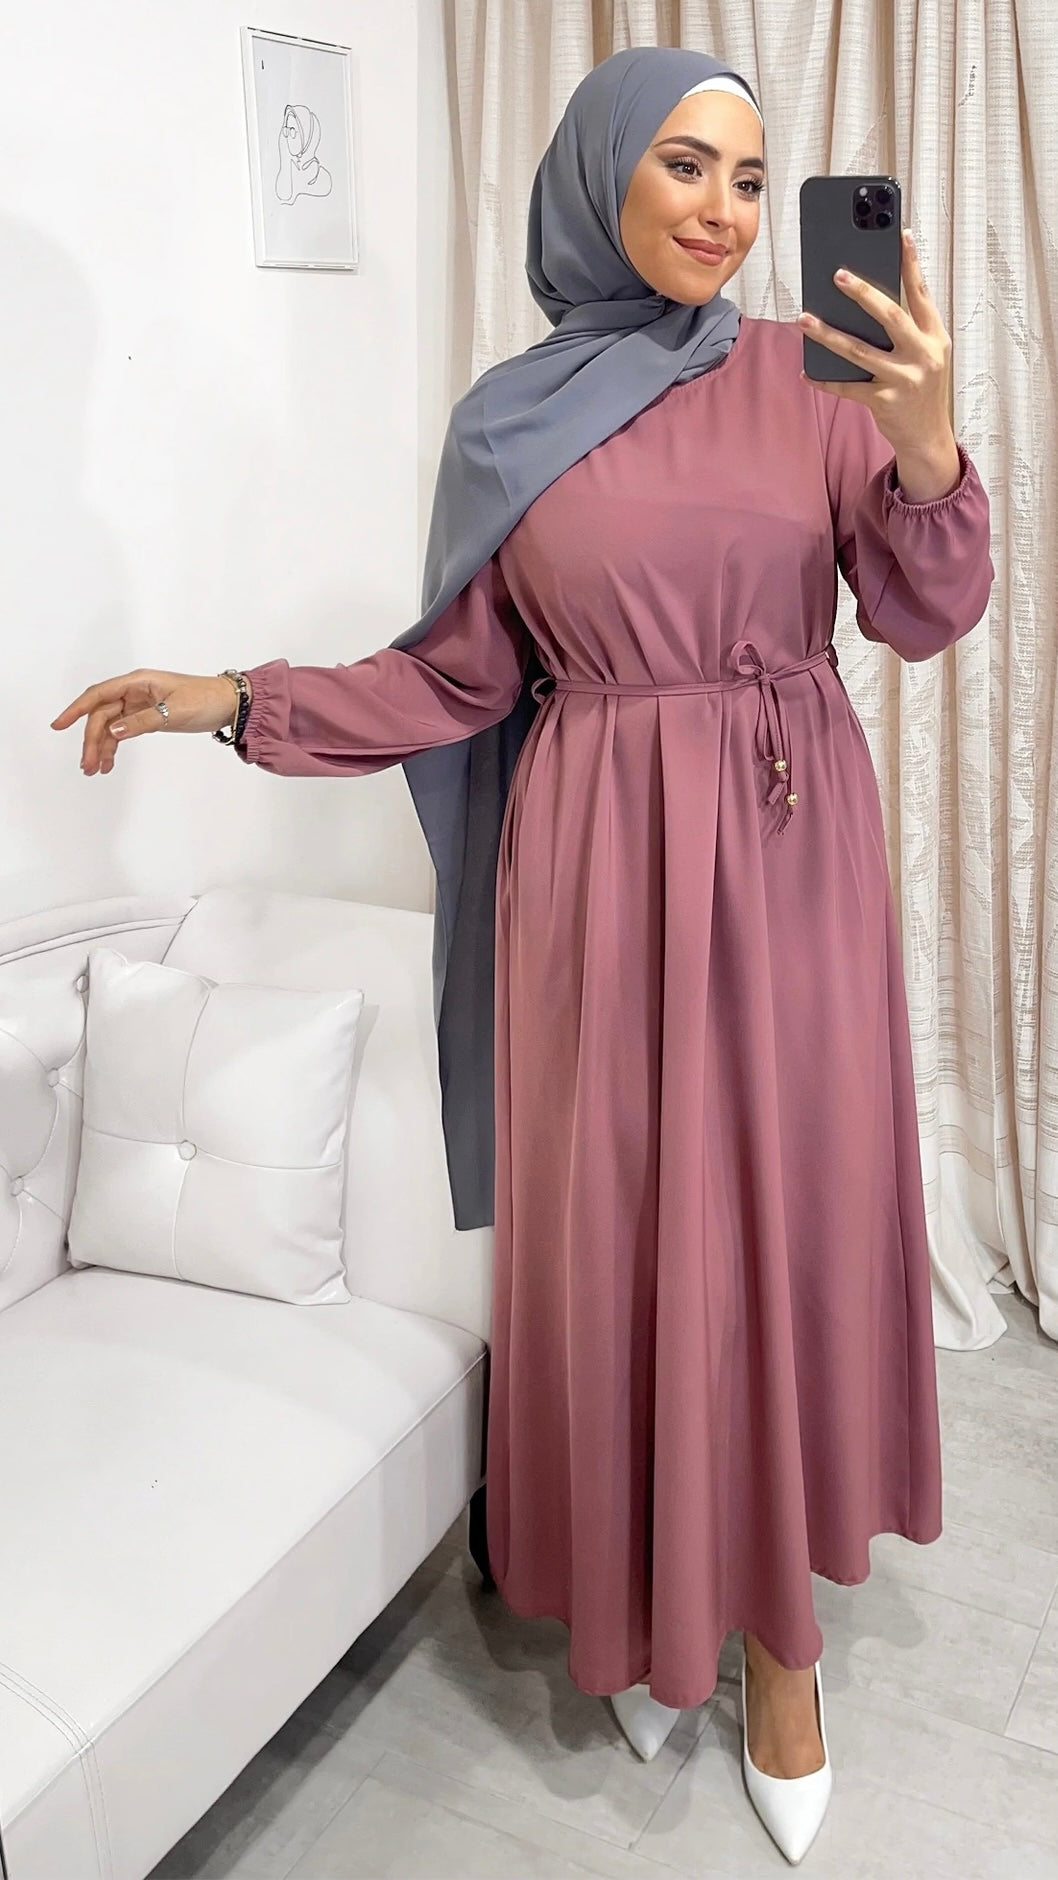 Vestito, abaya, semplice, colore unico, cintutino in vita, polsi arricciati, donna islamica, modest dress , Hijab Paradise, rosa scuro, hijab silver